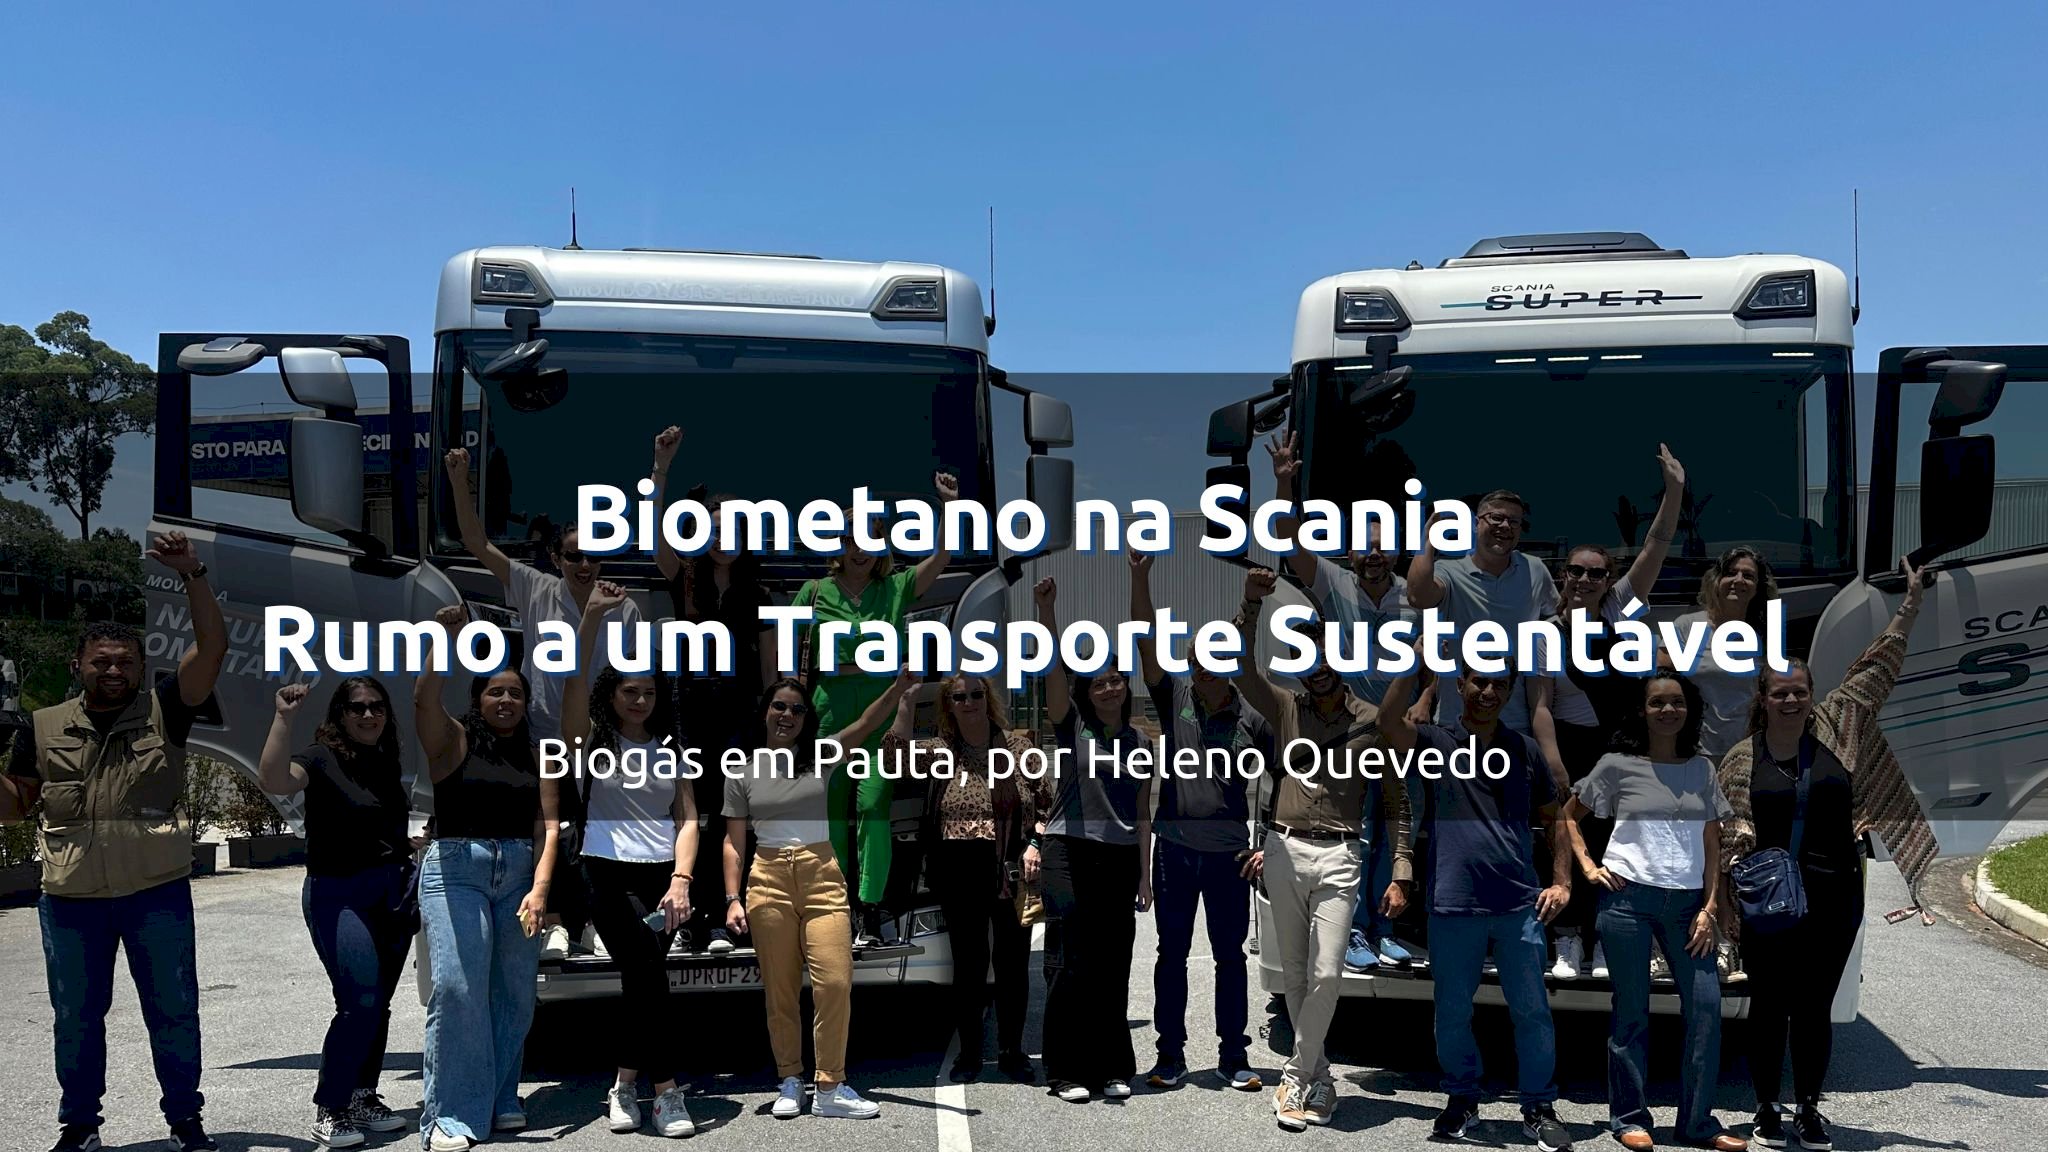 Press Trip: Biometano na Scania - Rumo a um Transporte Sustentável